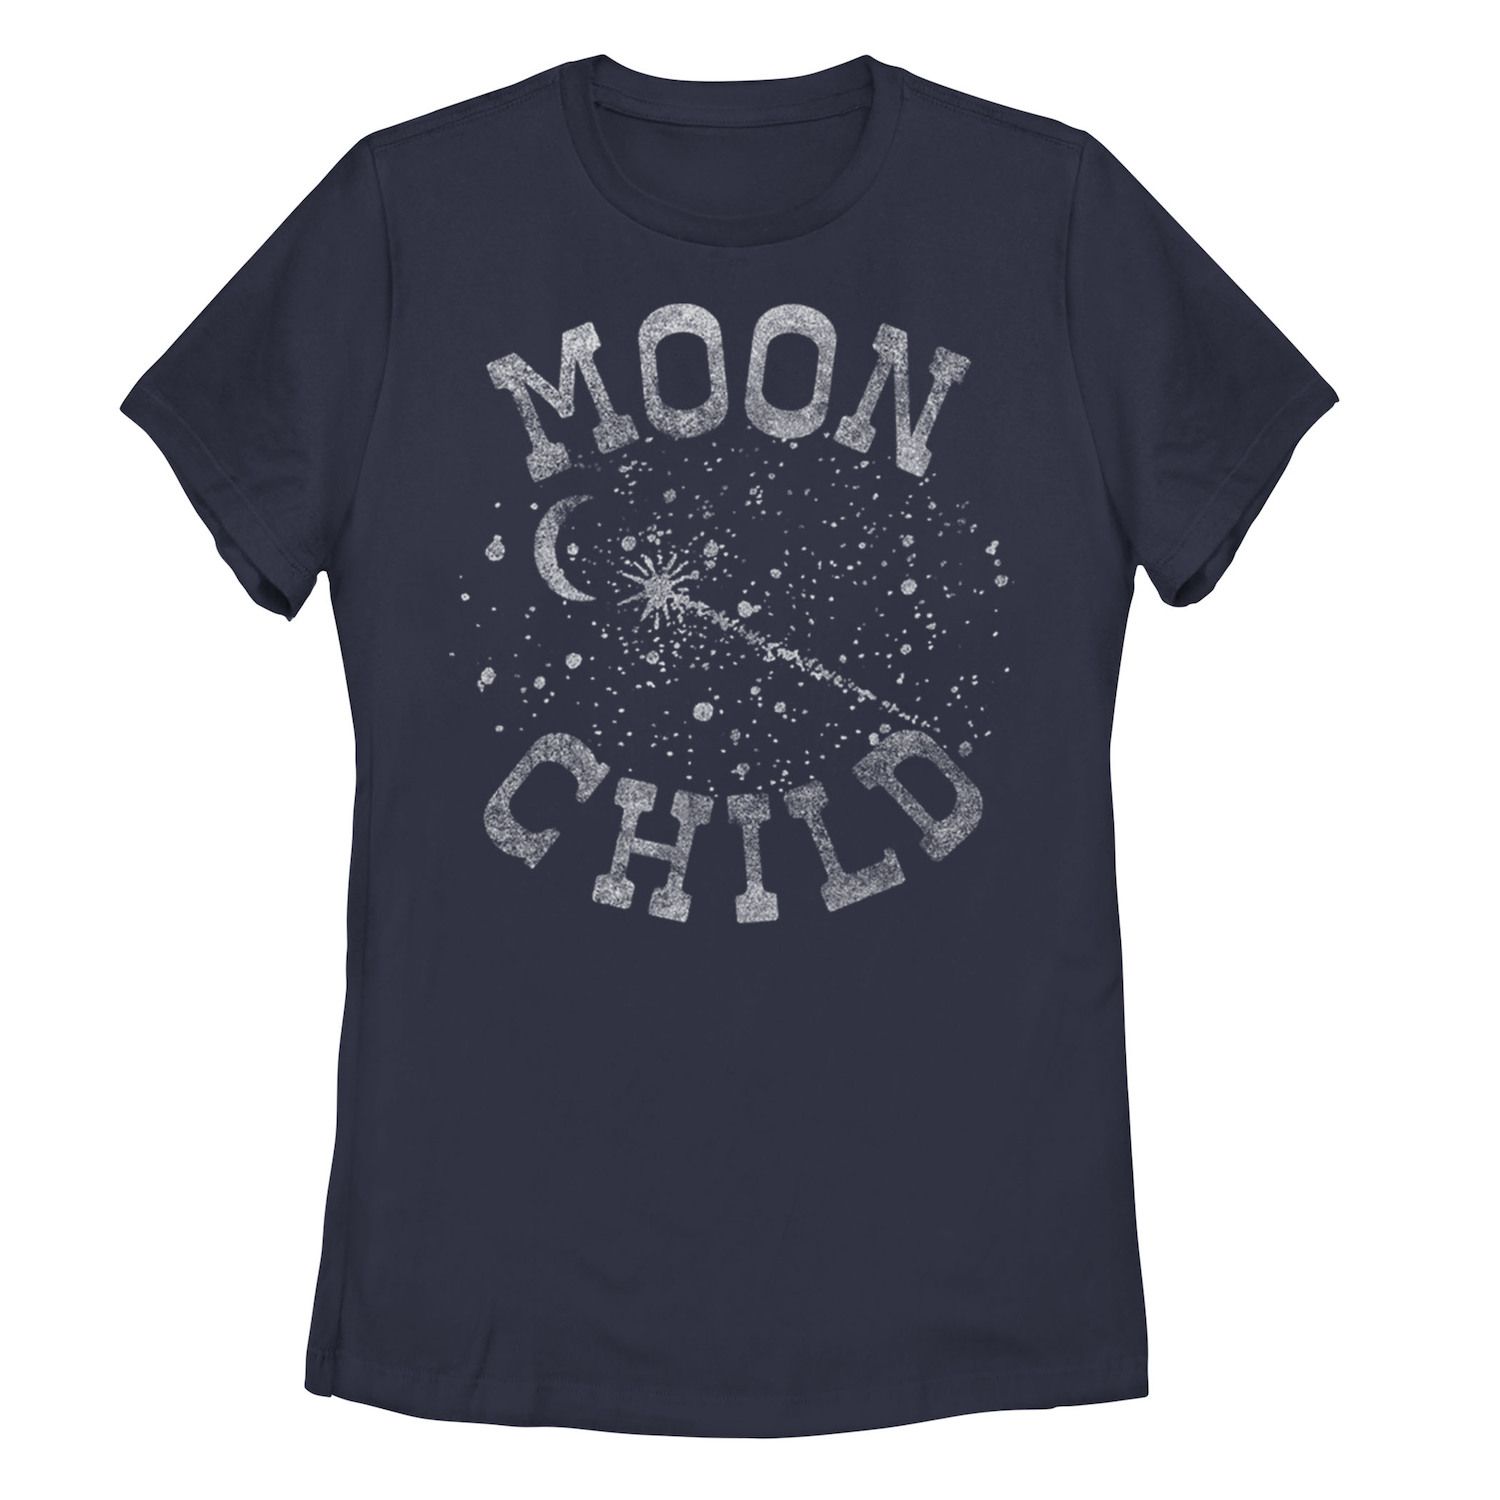 Детская футболка Moon Child с надписью Galactic, темно-синий